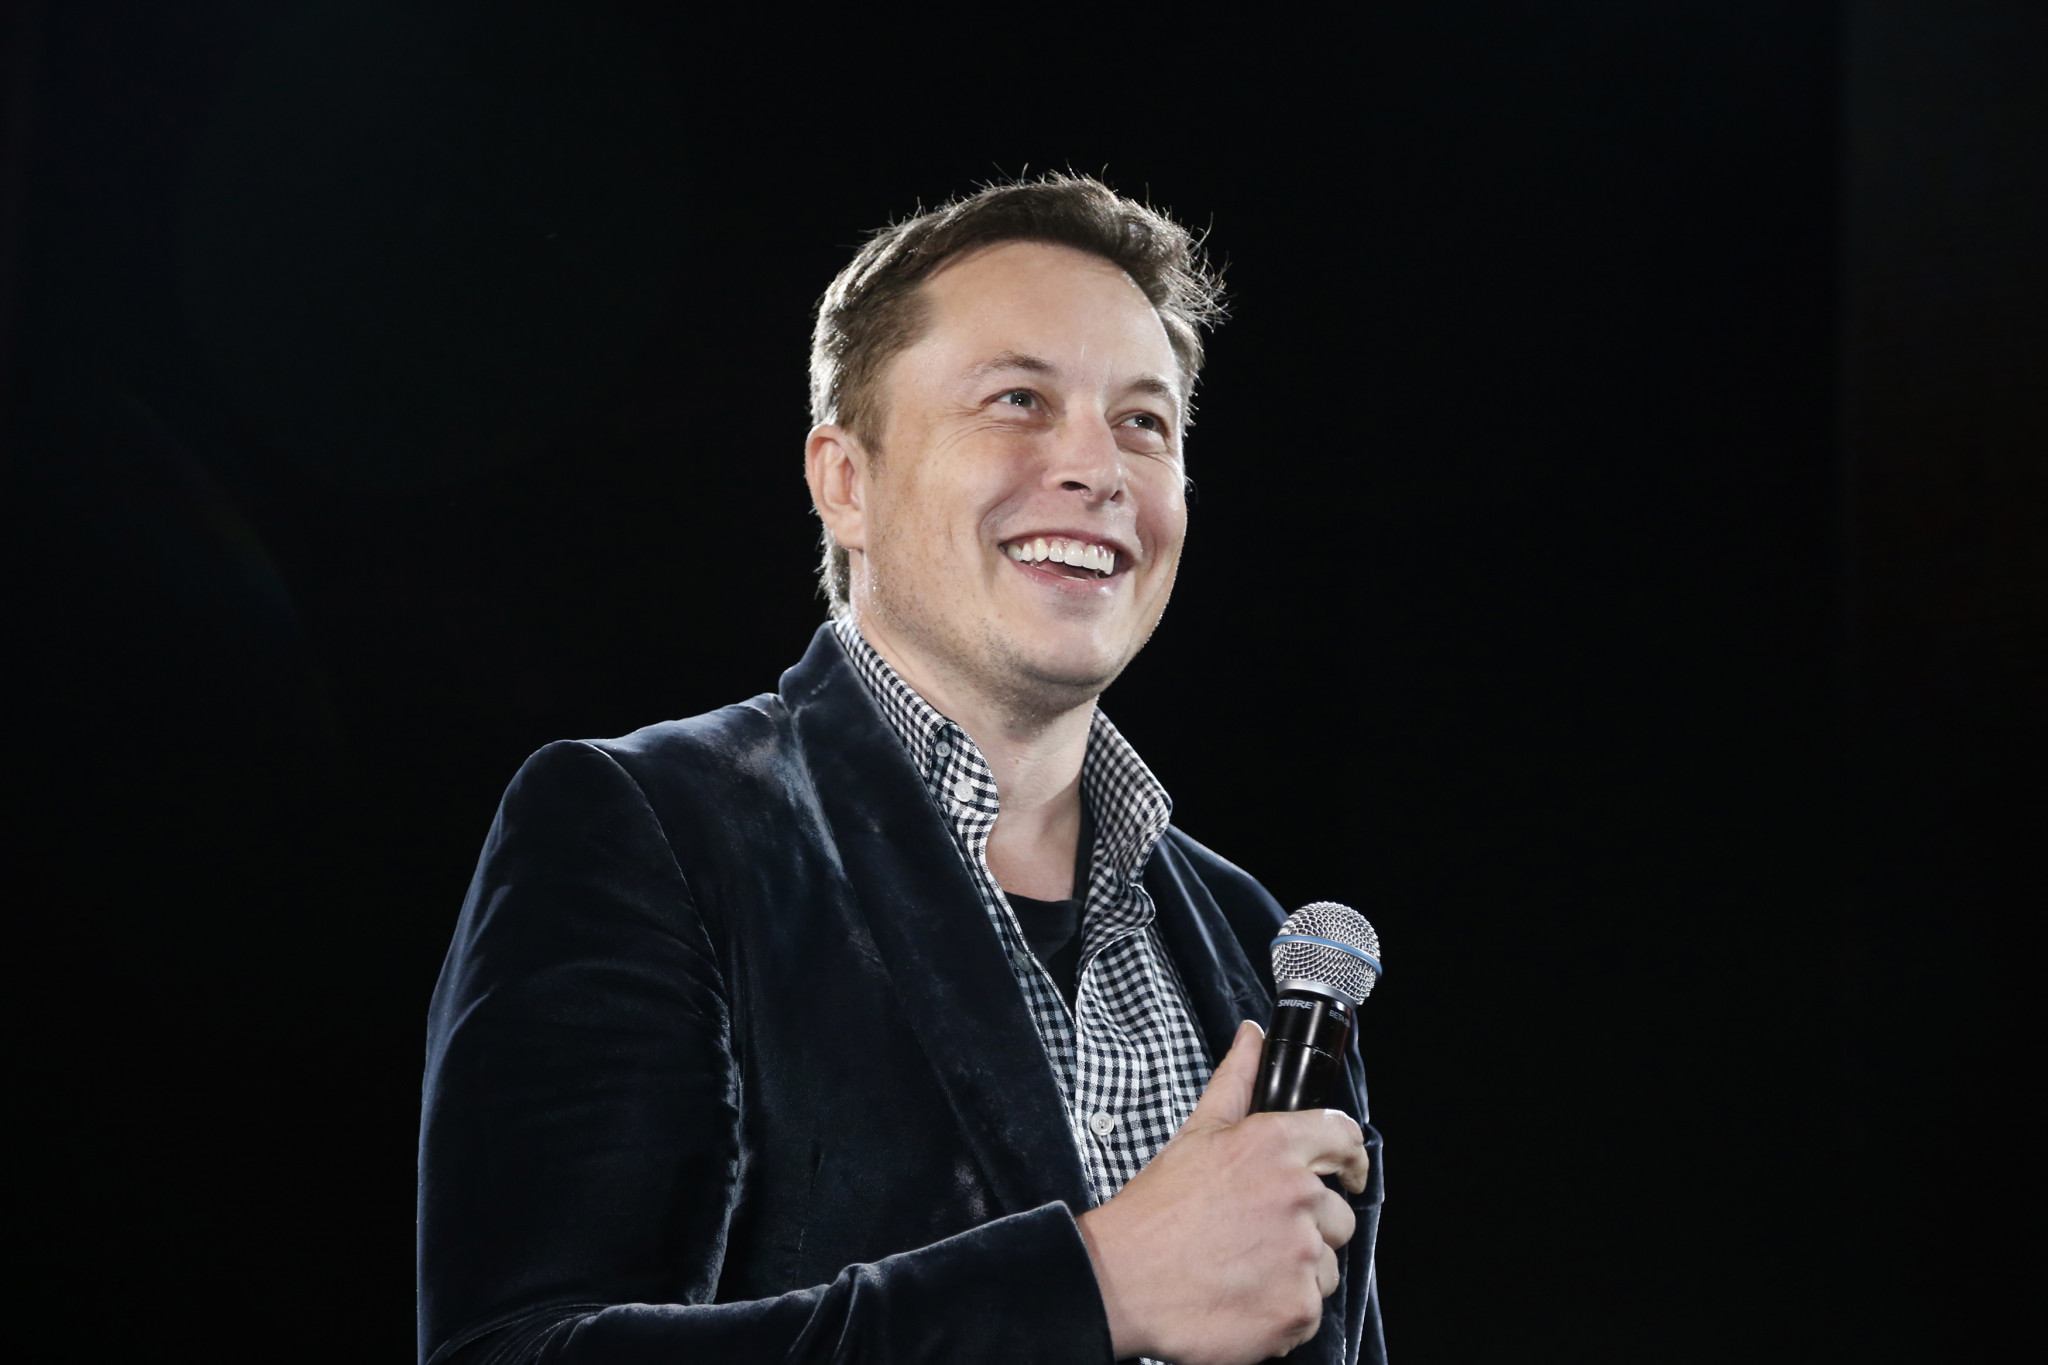 Inžinier, vynálezca, vizionár, podnikateľ, generálny riaditeľ automobilky Tesla Motors a jej najväčší akcionár. Vlastní firmu SpaceX.